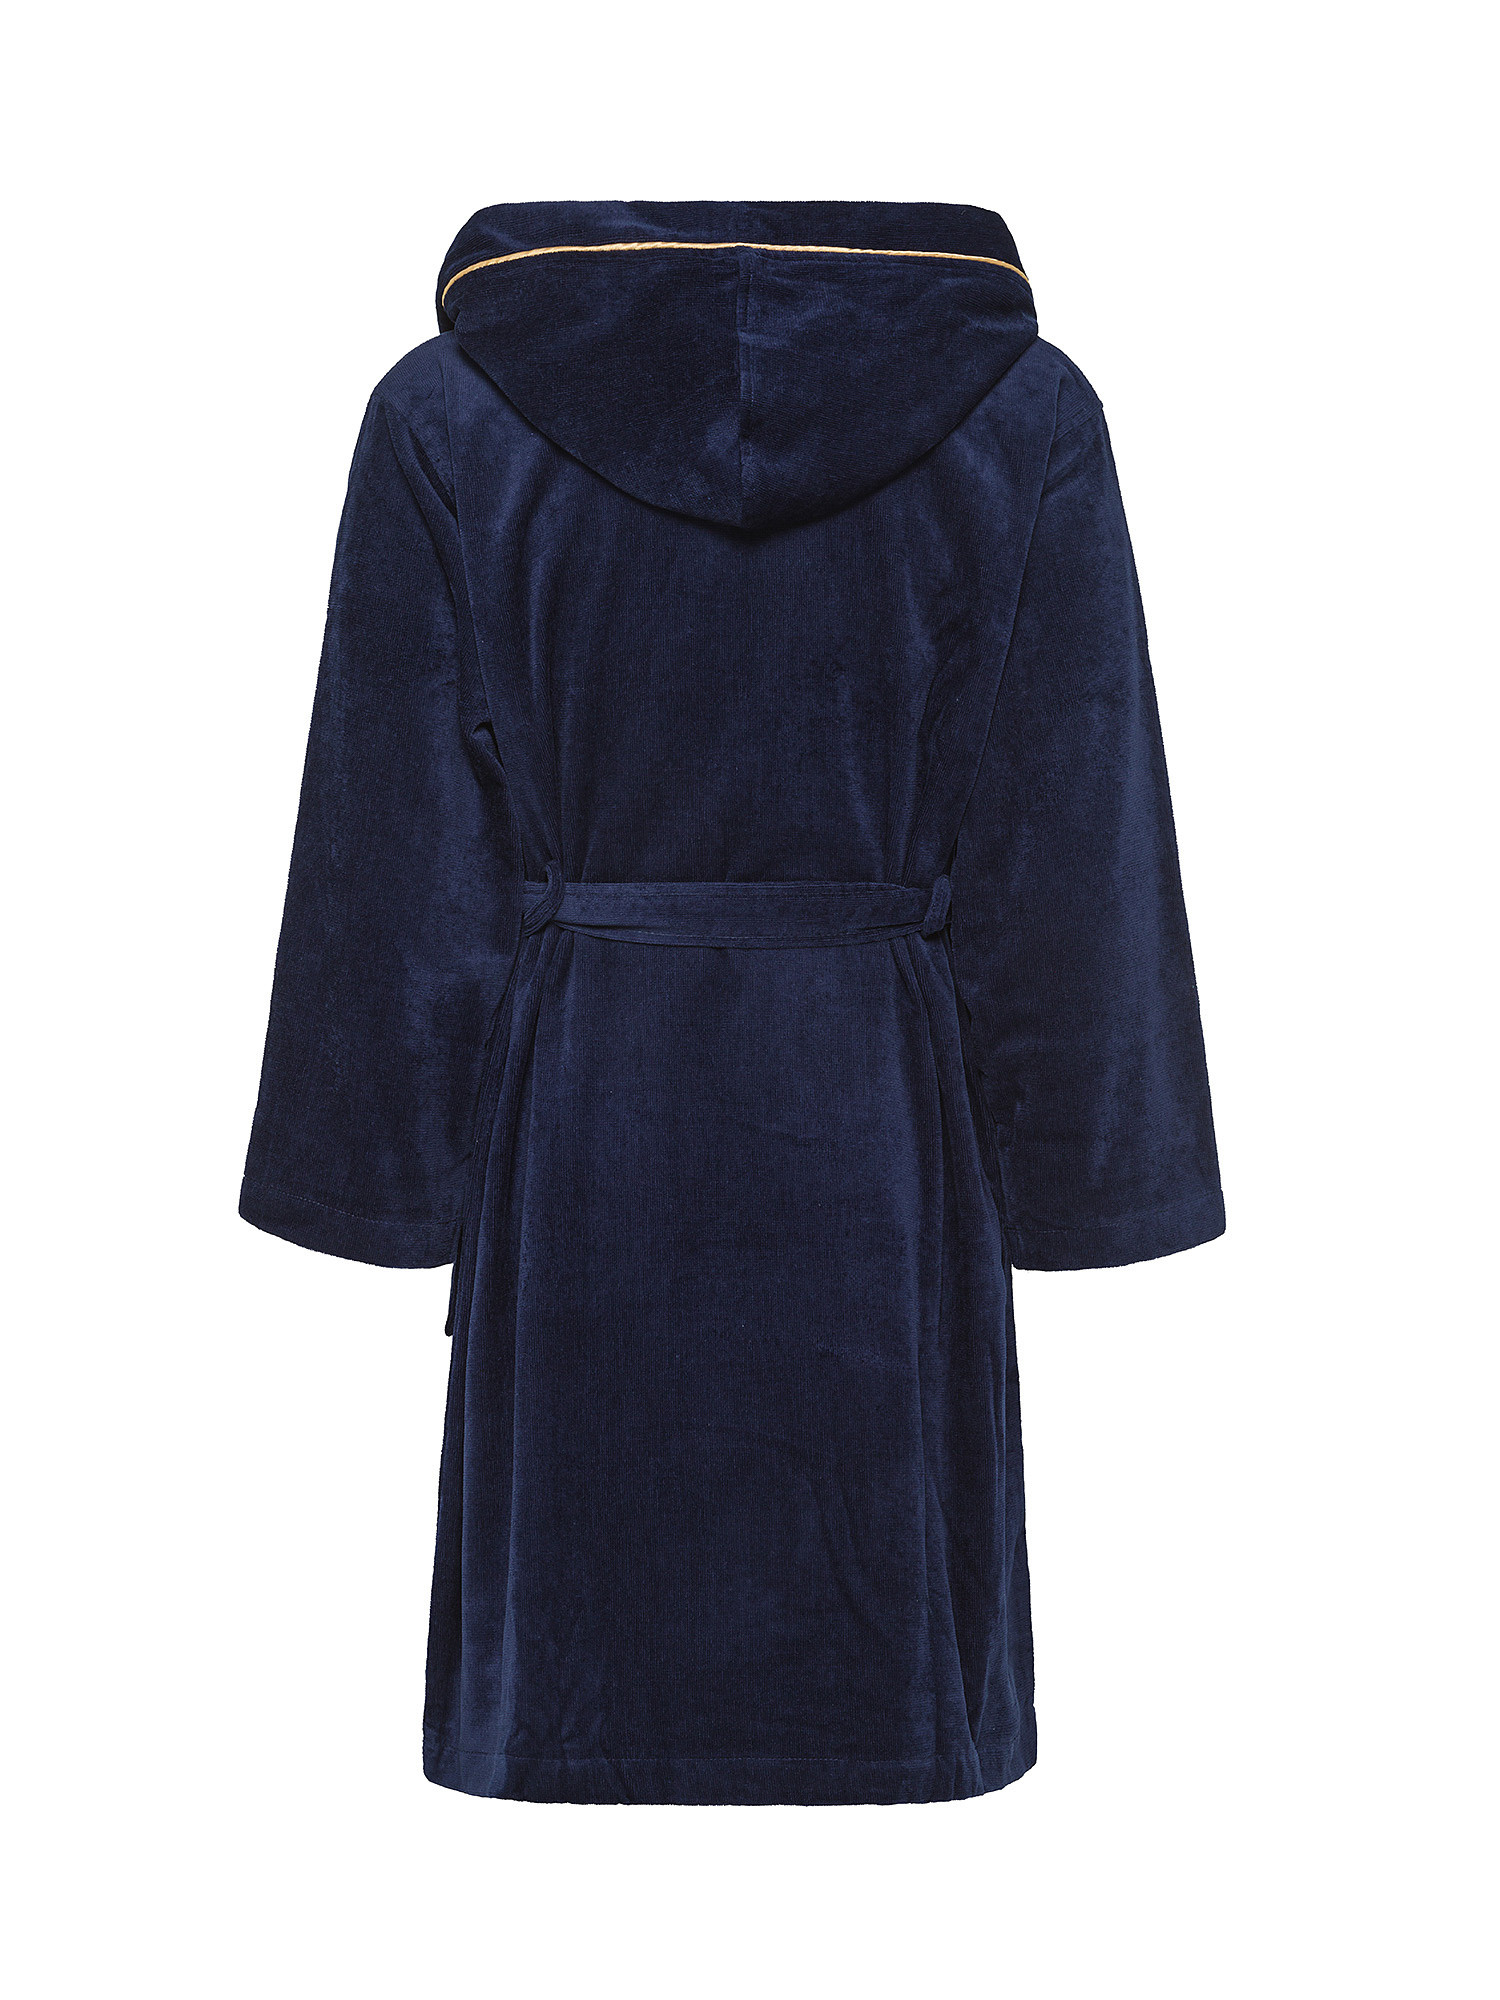 Solid color velor cotton bathrobe, Blue, large image number 1